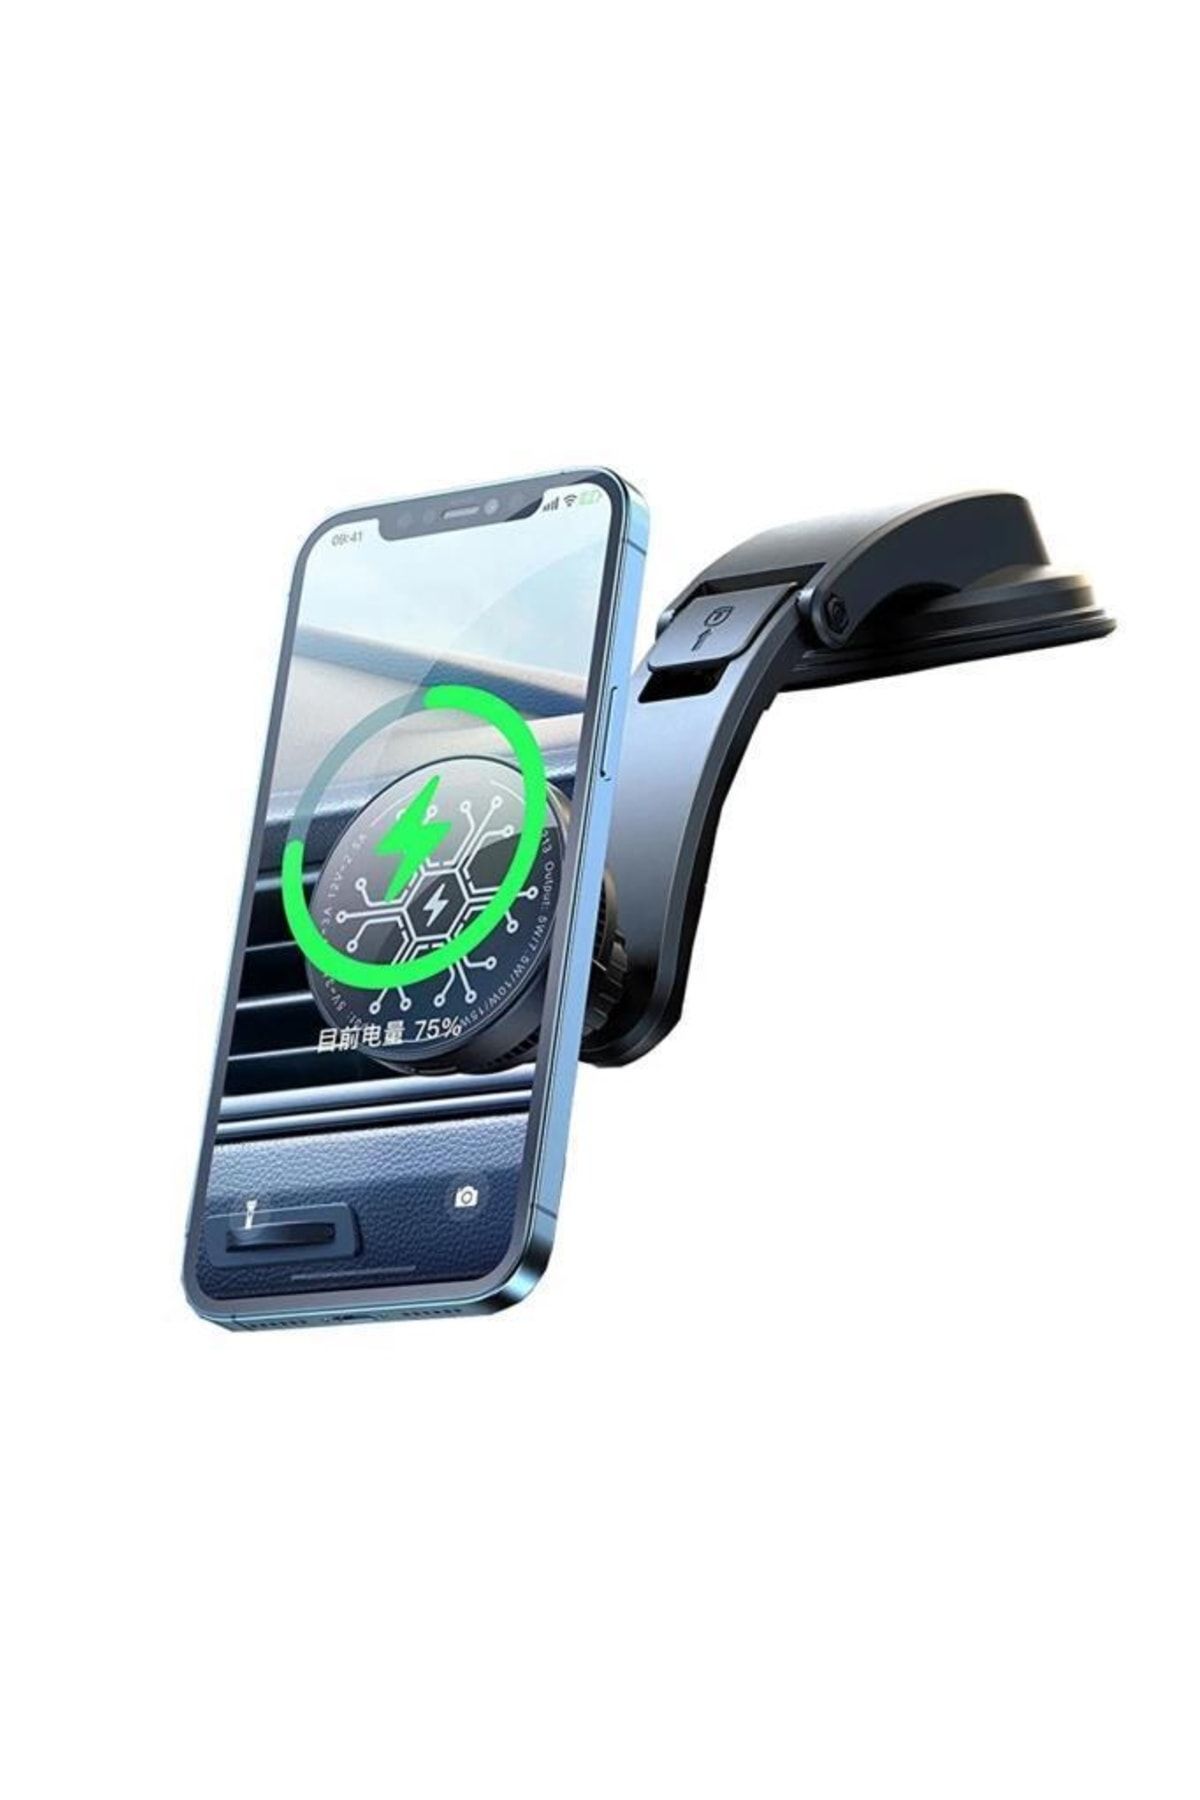 Mcdodo Cm-5060 Manyetik 360° Ayarlanabilir Telefon Tutucu - Fiyatı &  Özellikleri